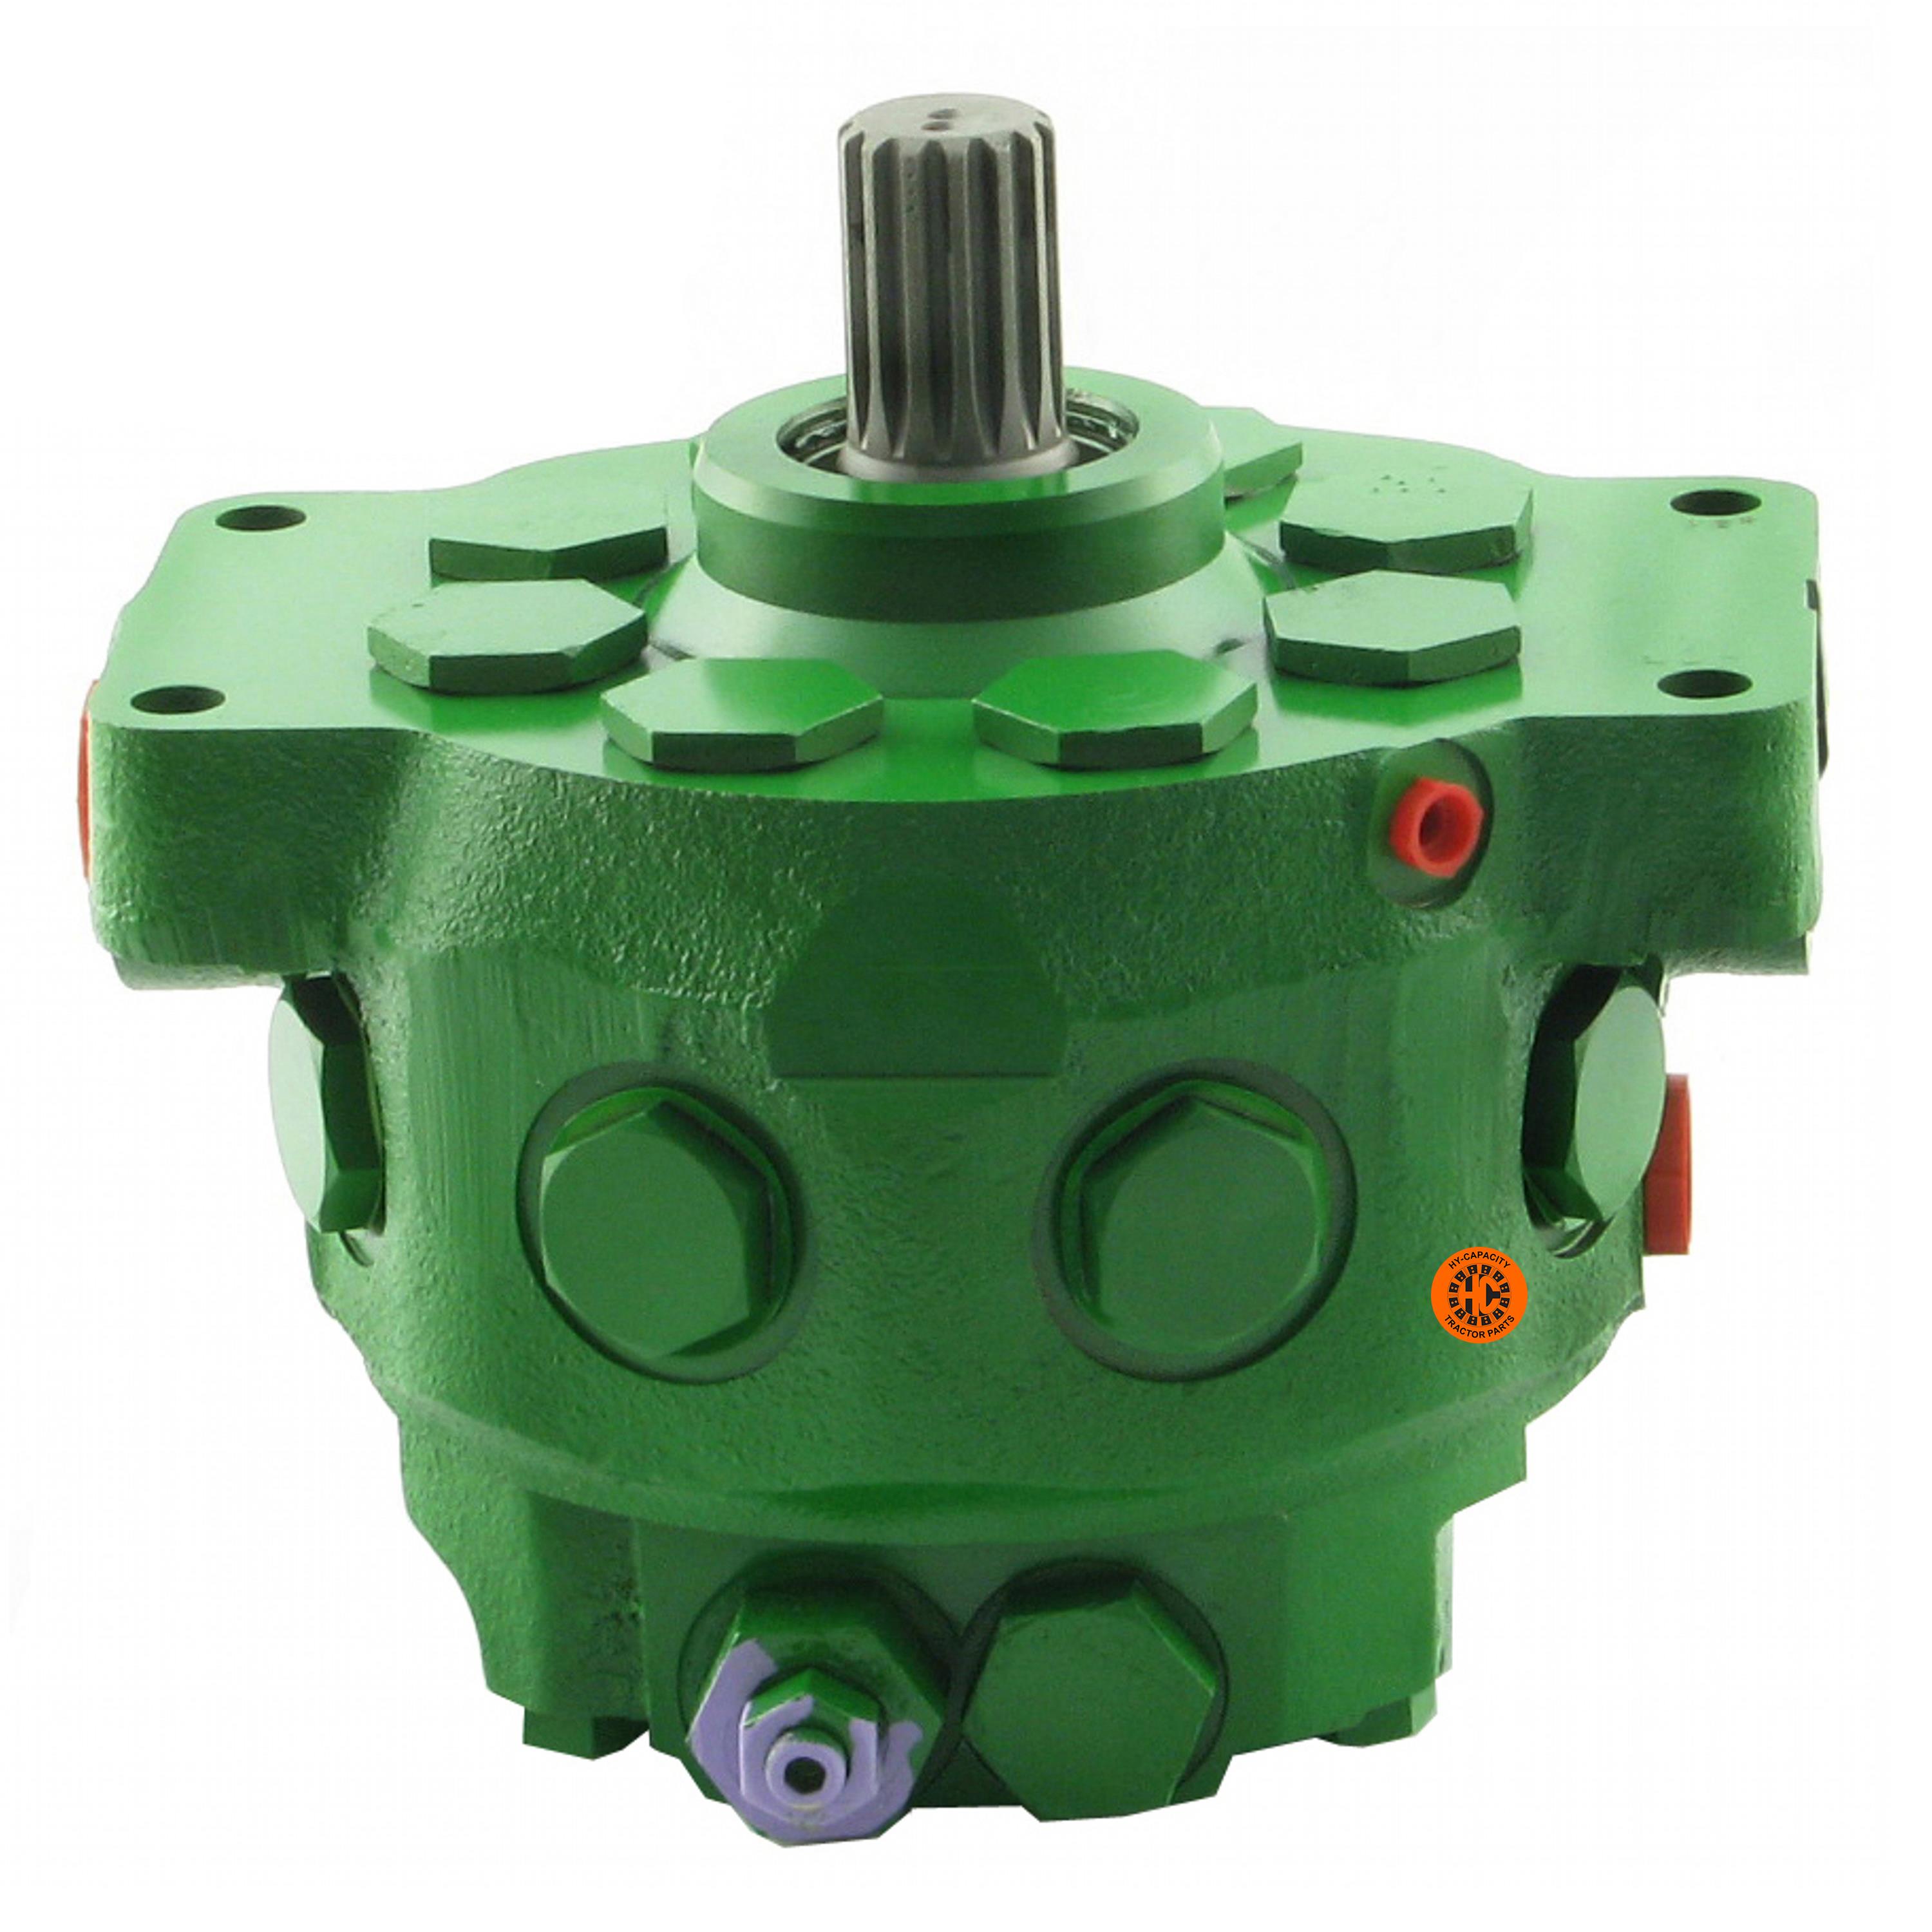 Hydraulic Pump, New, 15 GPM, Non-Serialized